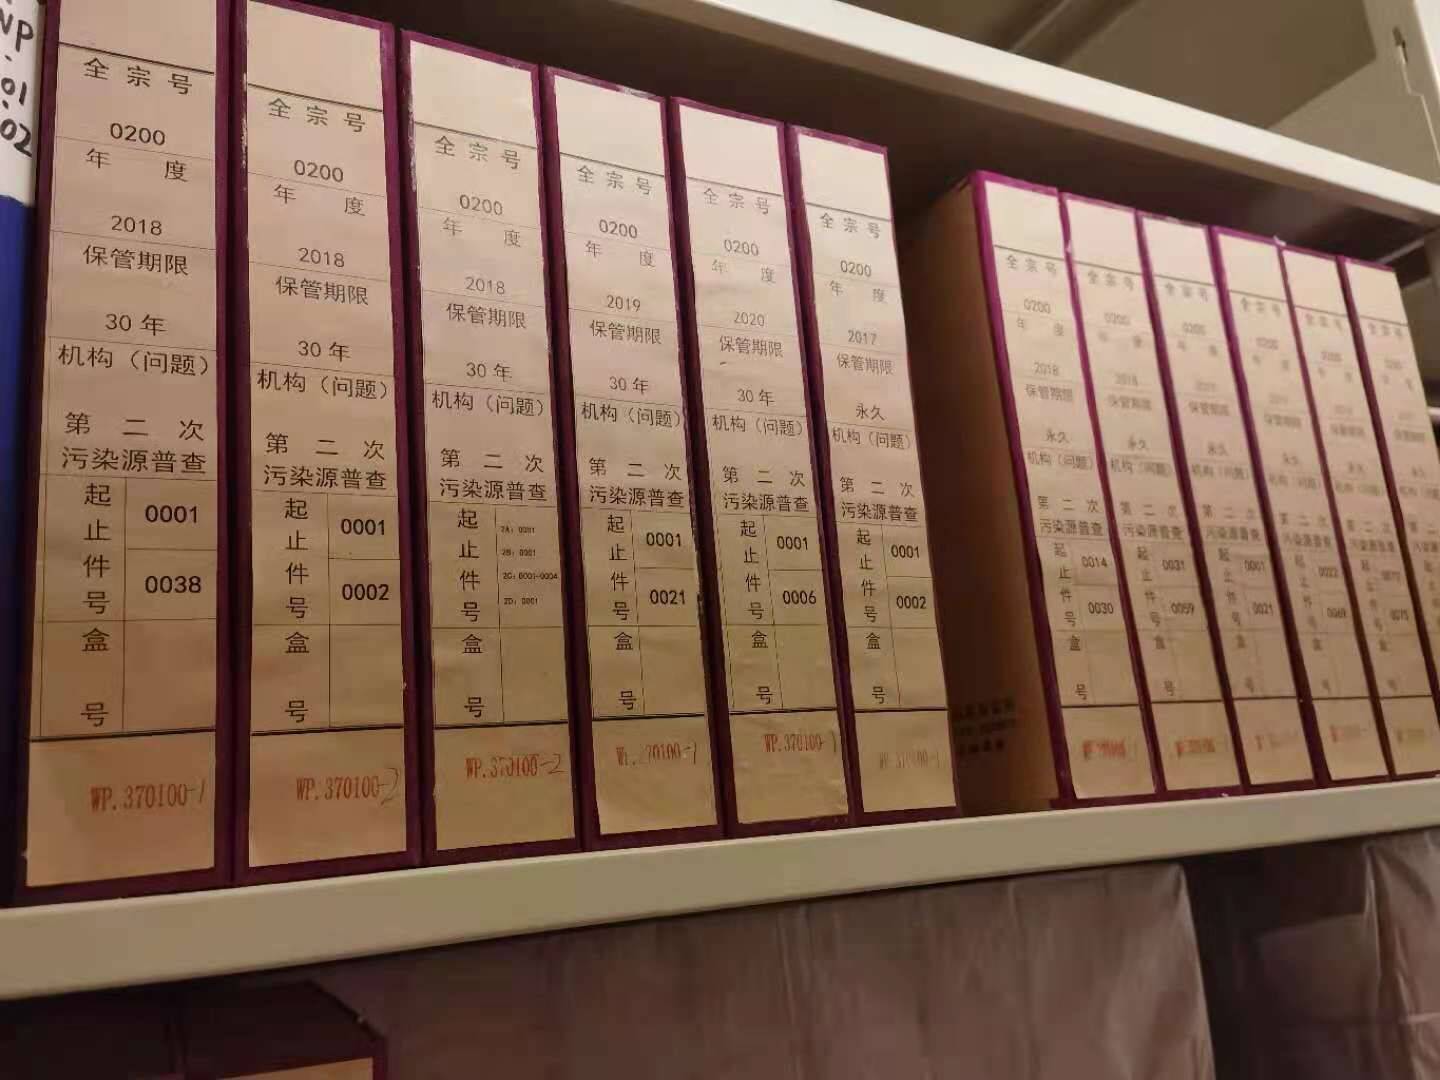 济南市顺利完成第二次全国污染源普查市级档案入馆工作